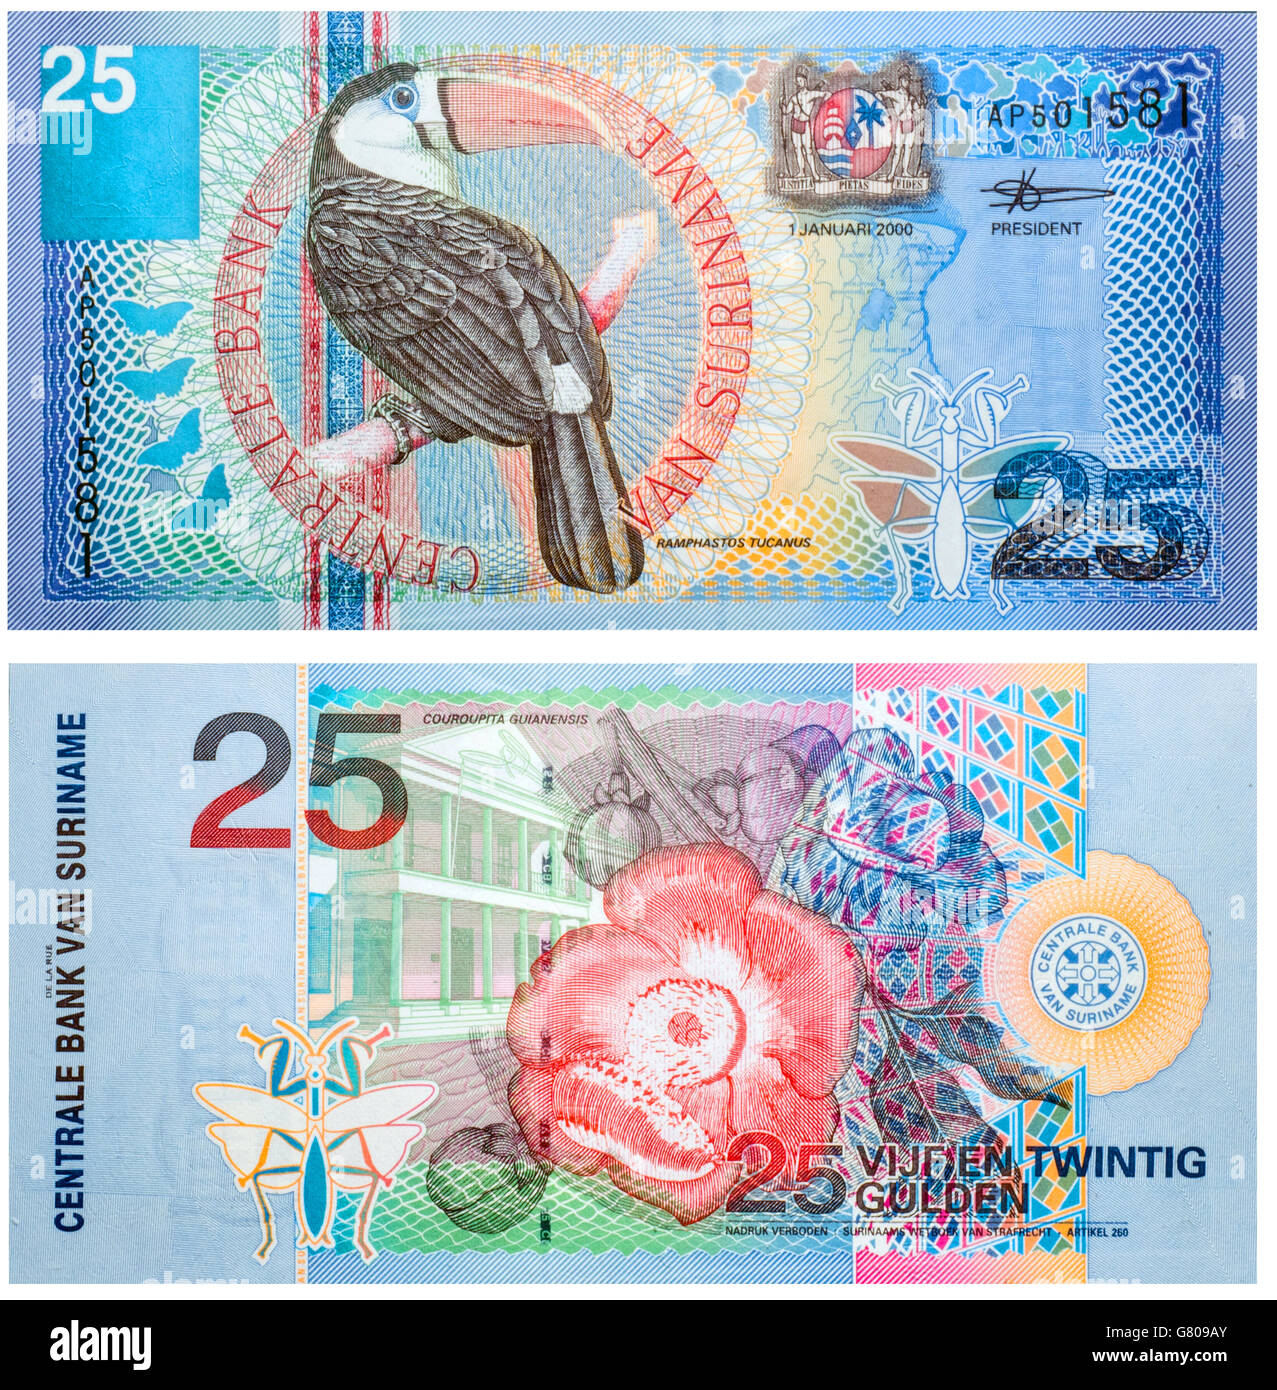 Banknote 25 Gulden Suriname Vorder- und Rückseite isoliert auf weiss auf 2000 abgegeben. Rot-billed Tukan auf Vorder- und eine Blume auf Rückseite Stockfoto